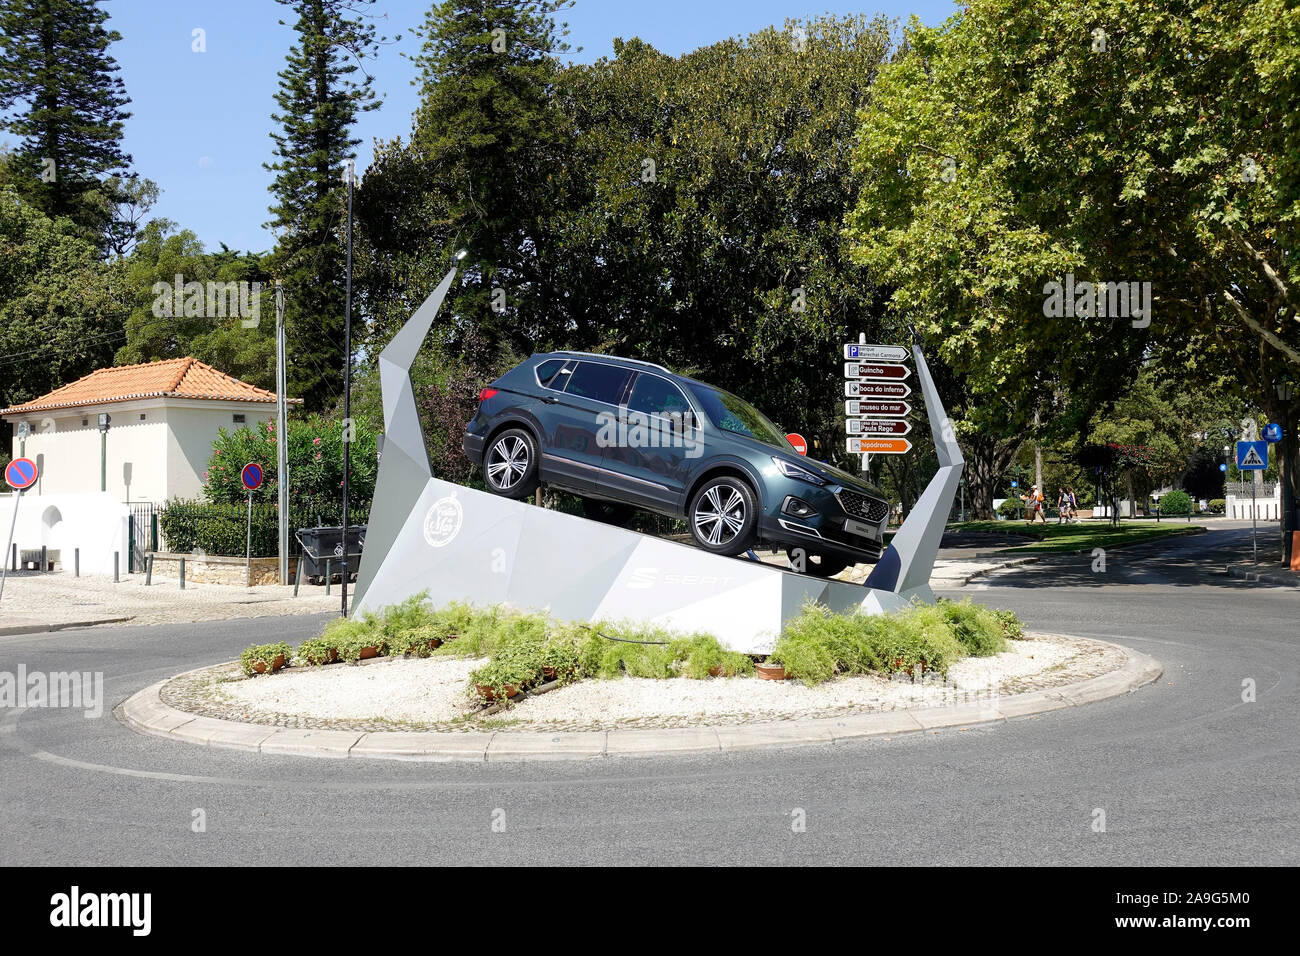 Un asiento Tarraco SUV se muestre en una rotonda en Cascais, Portugal, el asiento está patrocinando las Festas do Mar conciertos 2019 Foto de stock